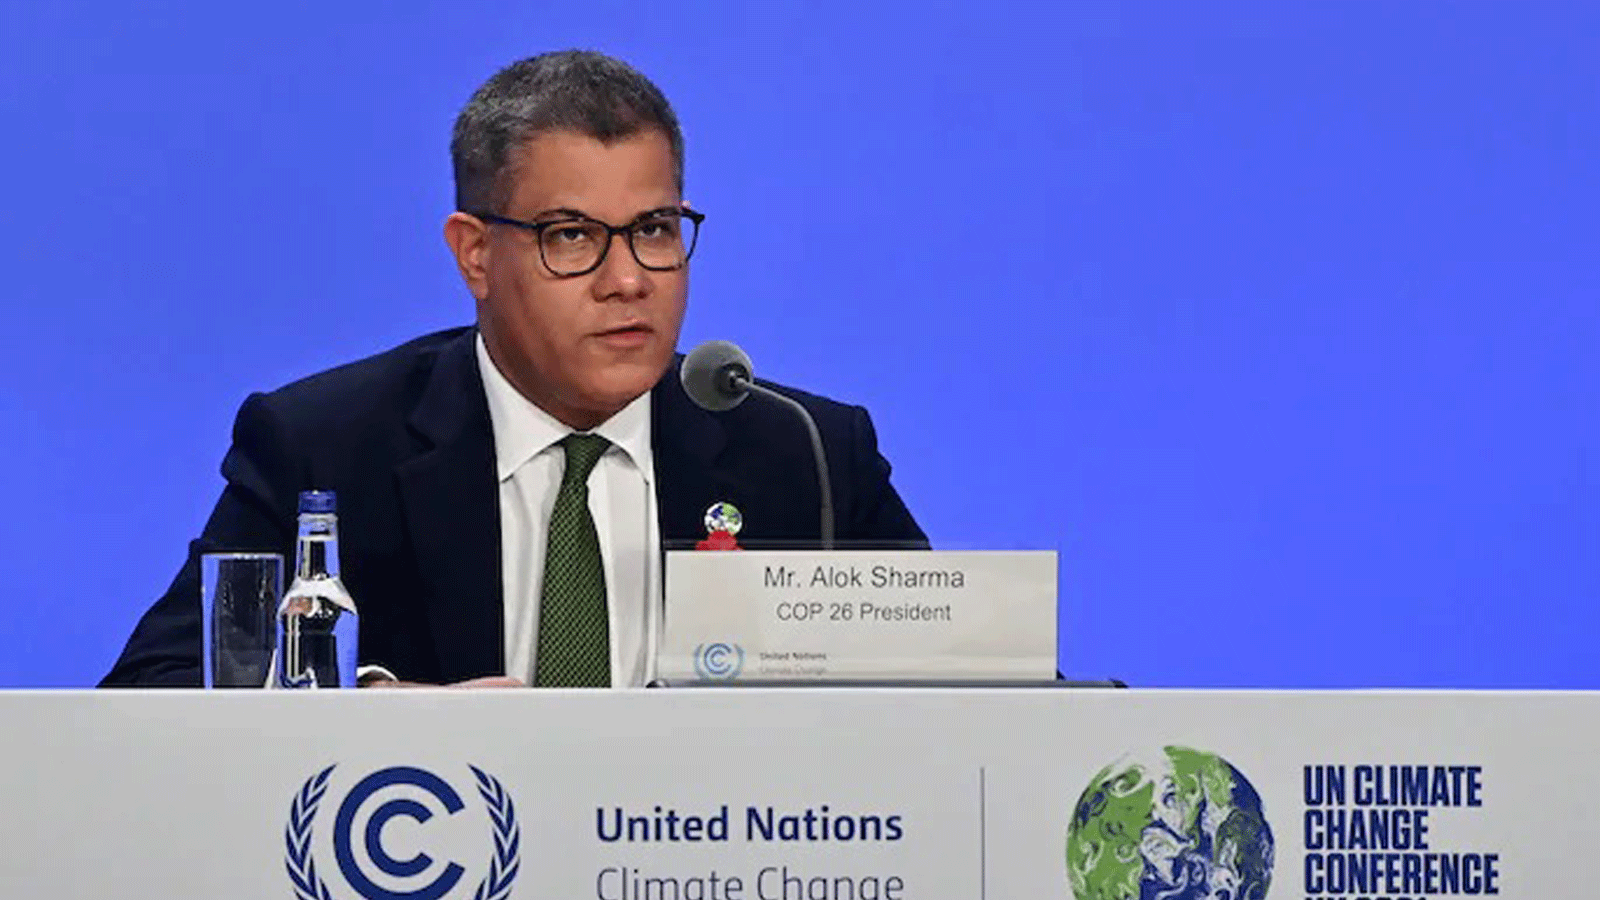 رئيس COP26 ألوك شارما متحدثاً خلال مؤتمر صحفي في قمة المناخ للأمم المتحدة في غلاسكو، اسكتلندا. في تشرين الثاني/6 نوفمبر 2021